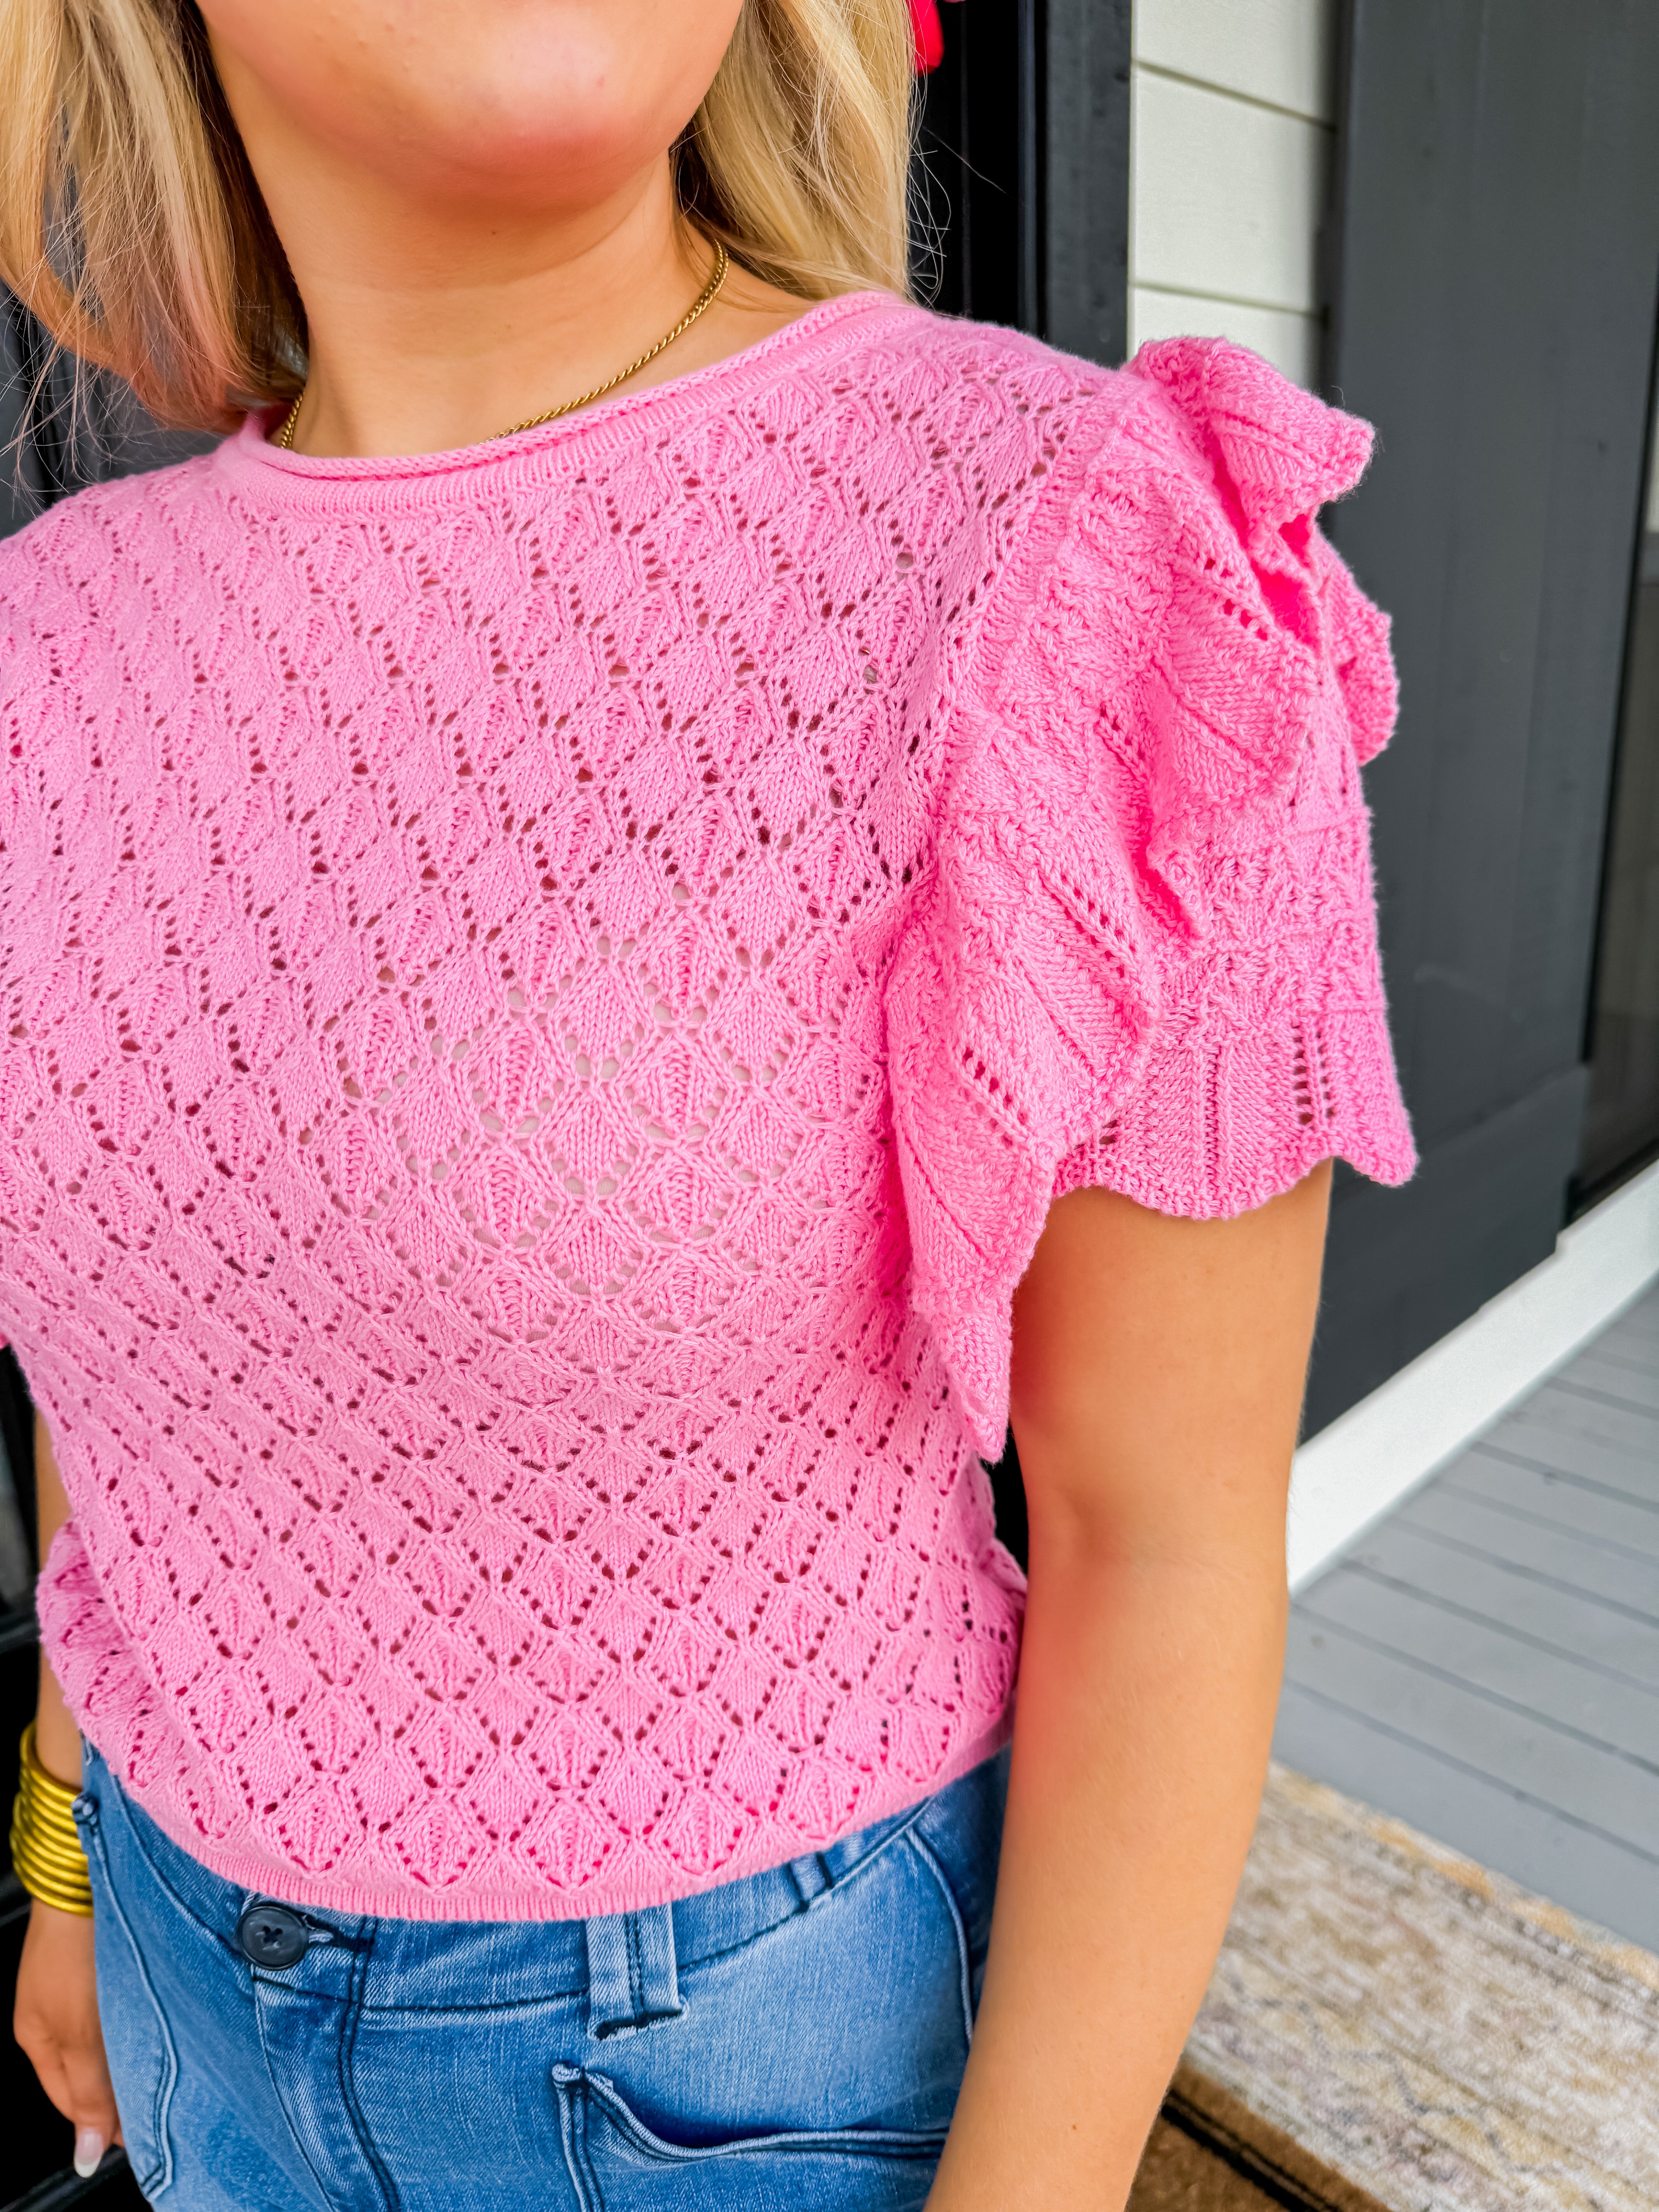 Pink Round Neck Sweater